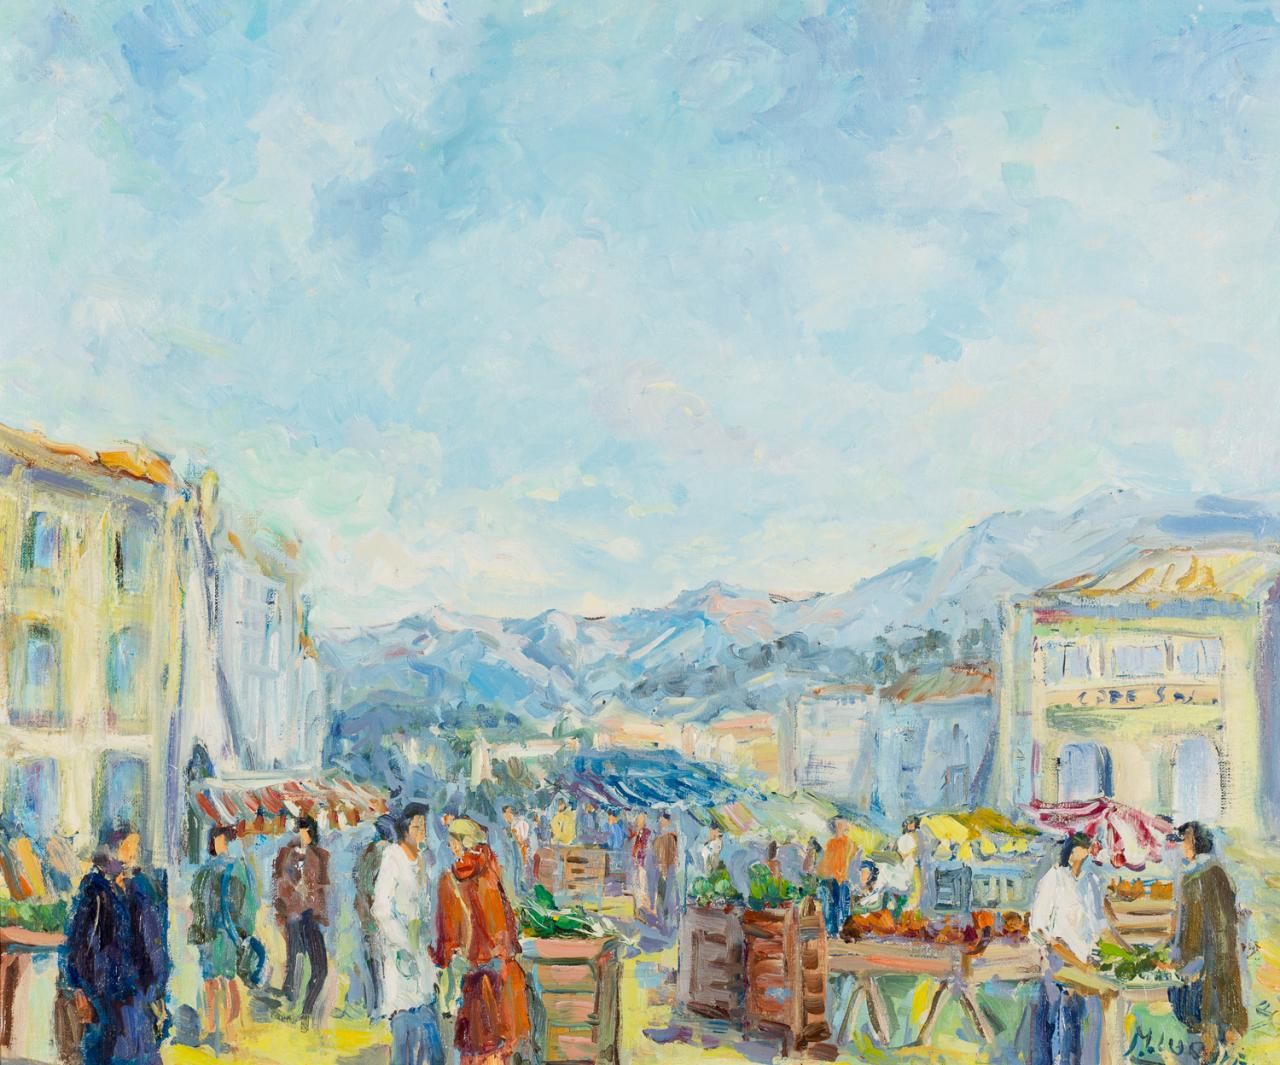 MONTSERRAT LUQUE (S. XX) 市场场景
布面油画
60 x 73 cm
左下角有签名："M。LUQUE"。